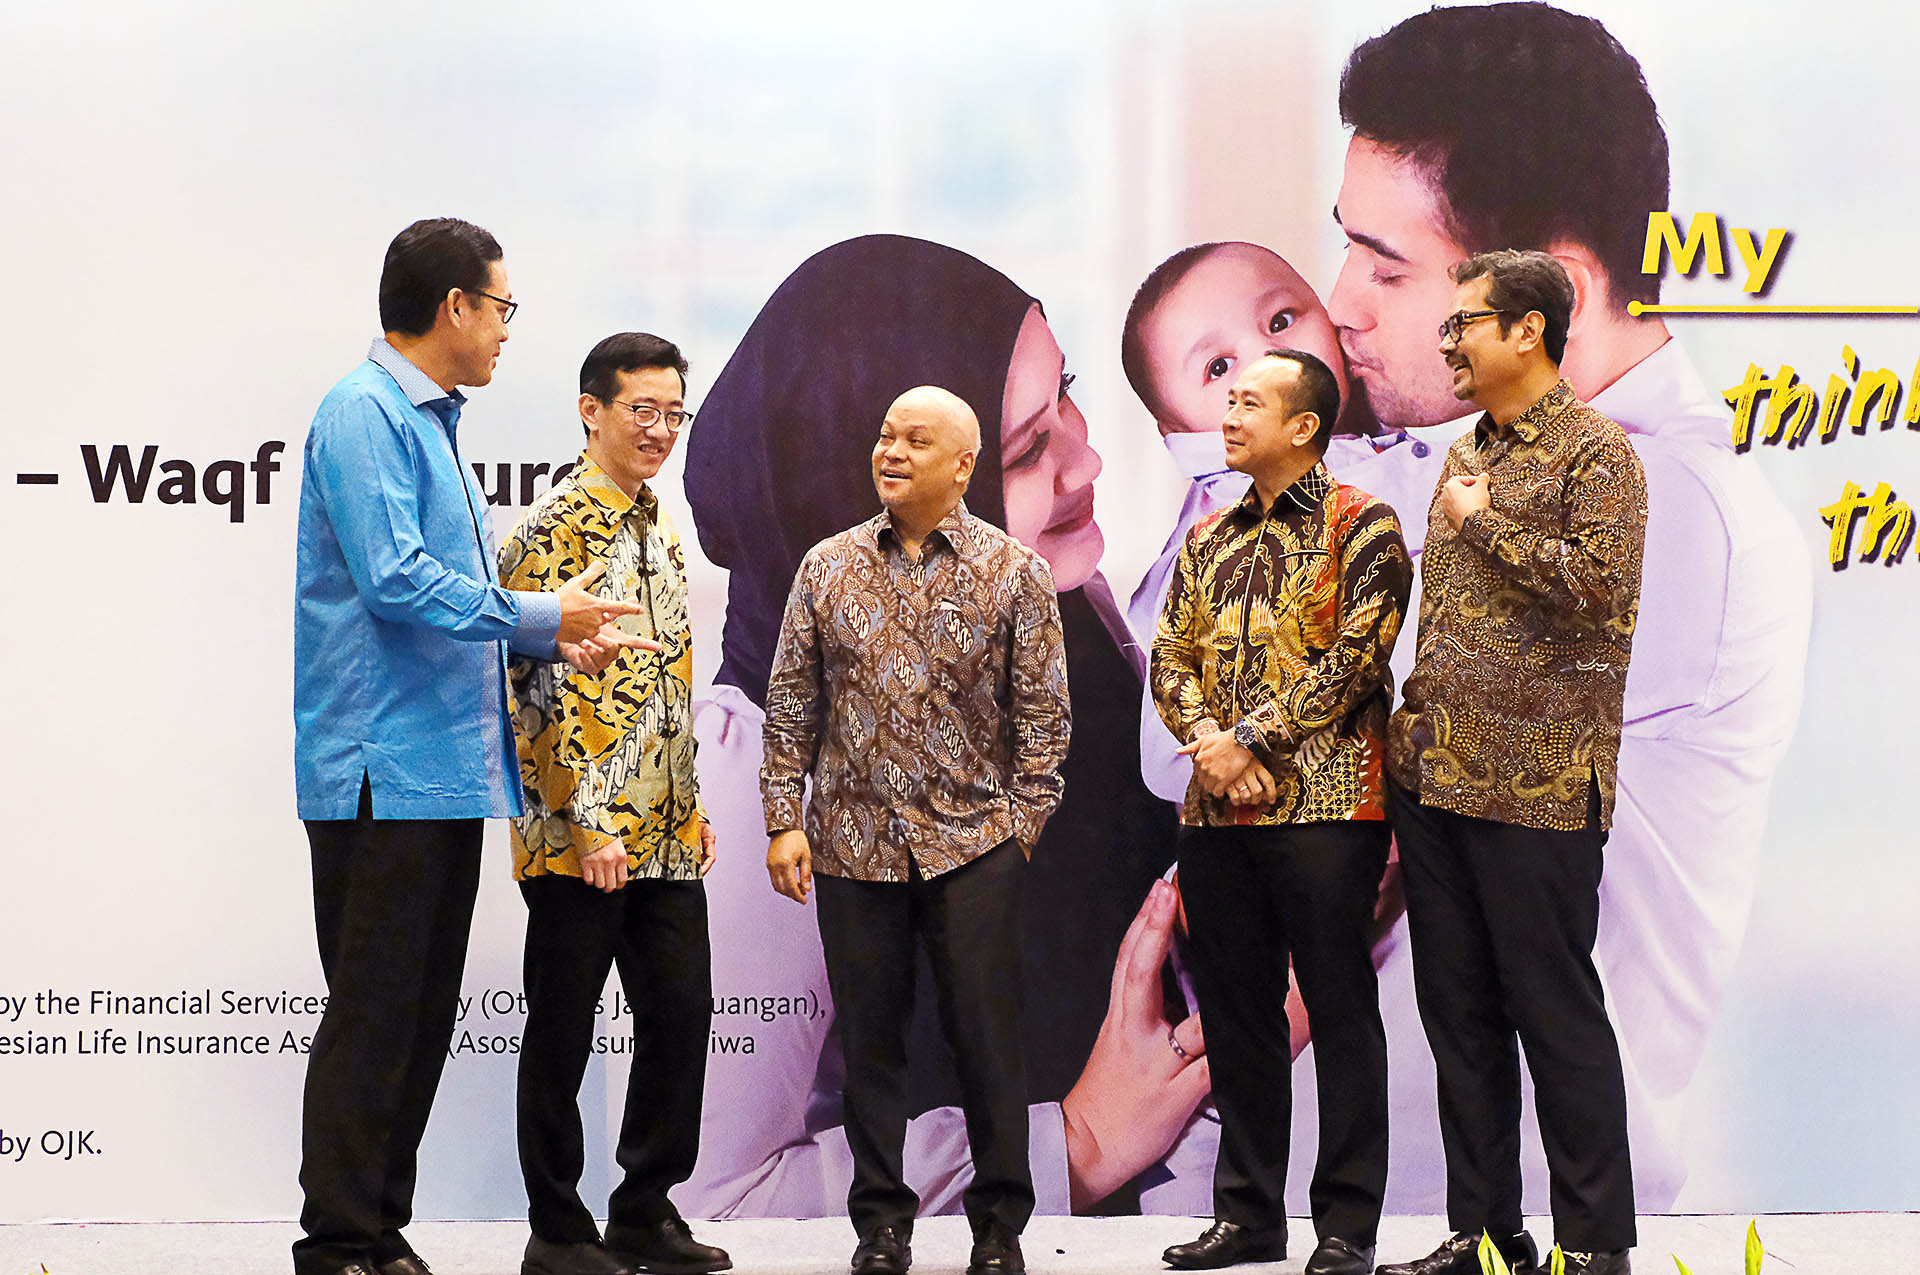 Allianz Indonesia & Maybank Indonesia Perkenalkan Fitur Wakaf pada Asuransi Jiwa Unit Link Berbasis Syariah